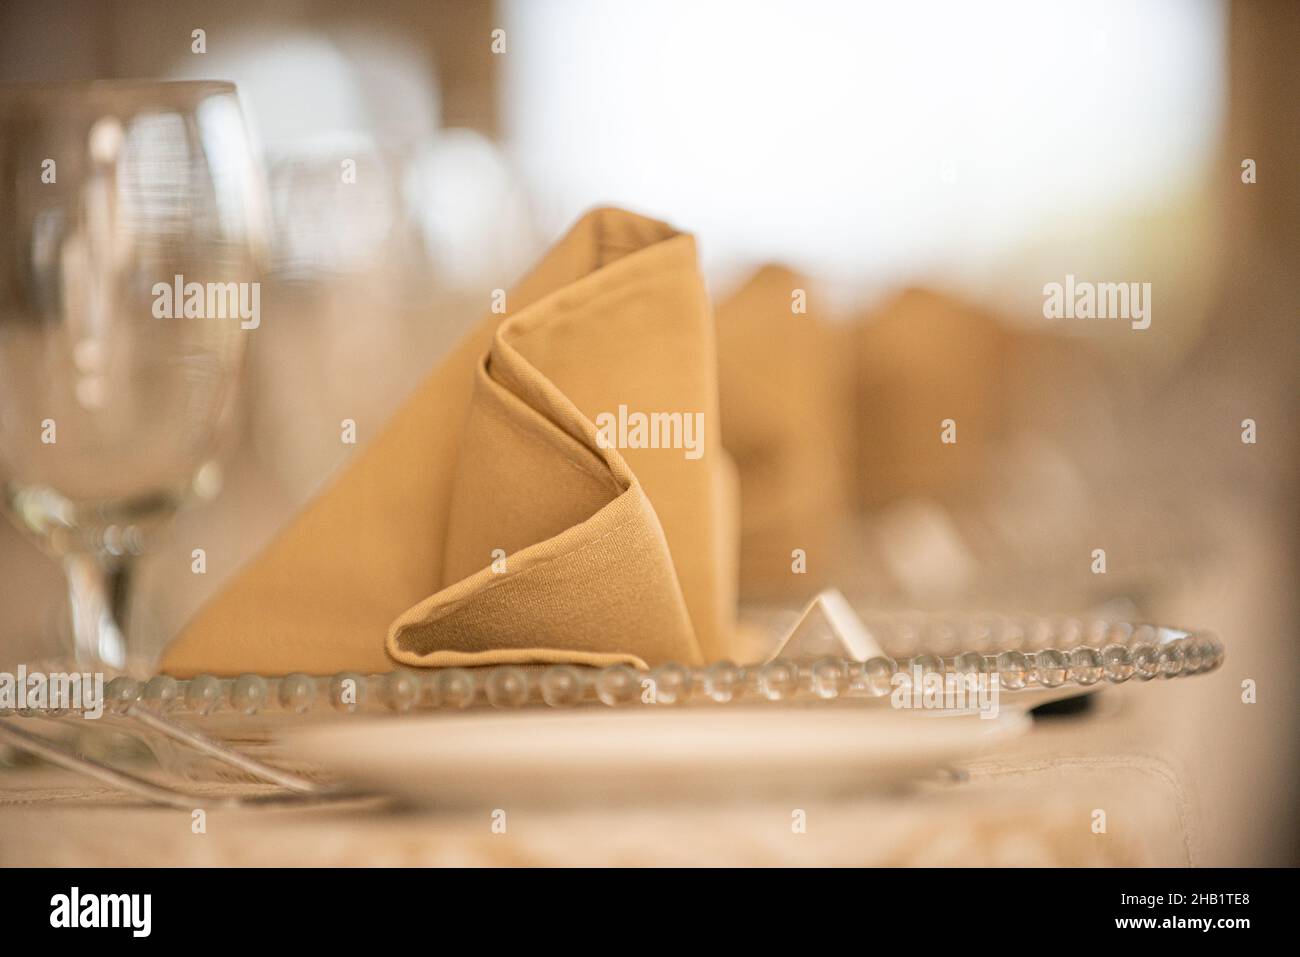 Des rangées de linge beige plient des serviettes de table sur des assiettes en verre lors du dîner Banque D'Images